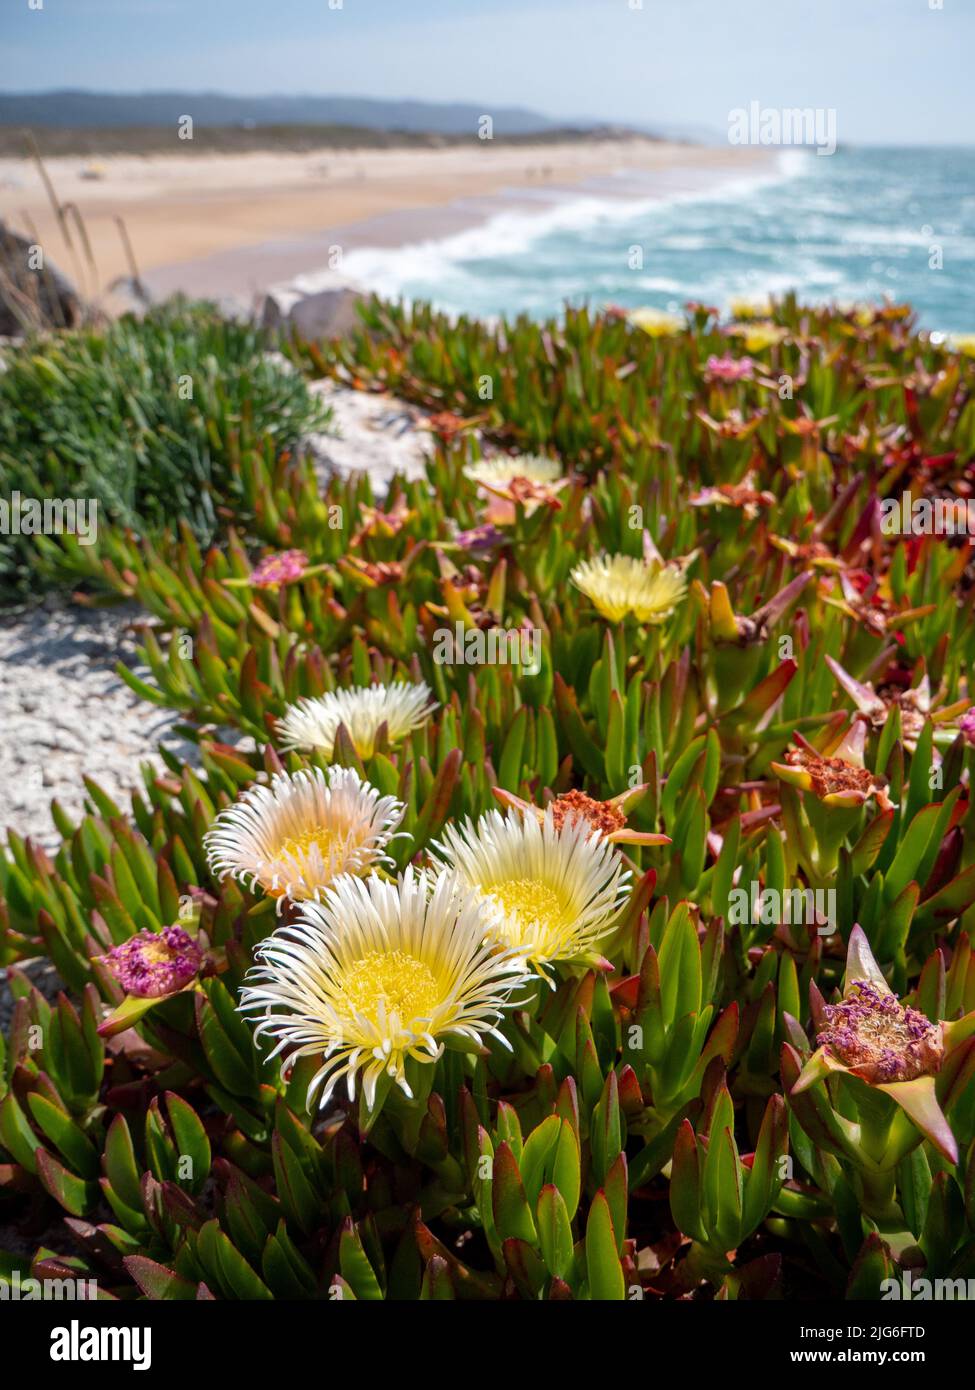 belle journée sur la plage portugaise au bord de l'océan atlantique avec fleurs de glace qui fleurissent sur les dunes Banque D'Images